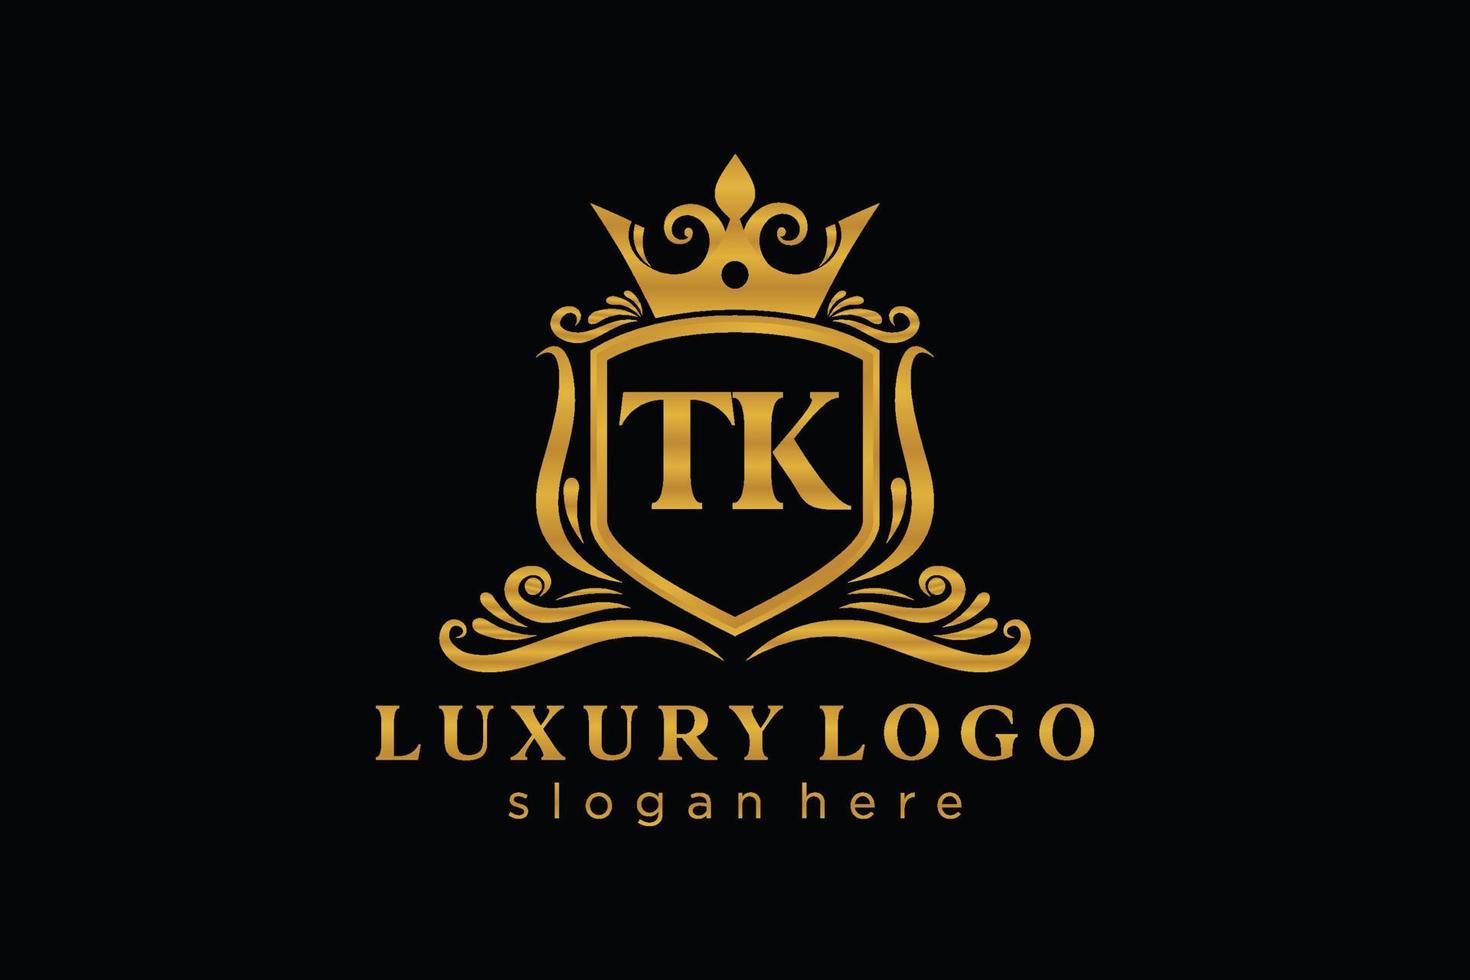 plantilla de logotipo de lujo real de letra tk inicial en arte vectorial para restaurante, realeza, boutique, cafetería, hotel, heráldica, joyería, moda y otras ilustraciones vectoriales. vector